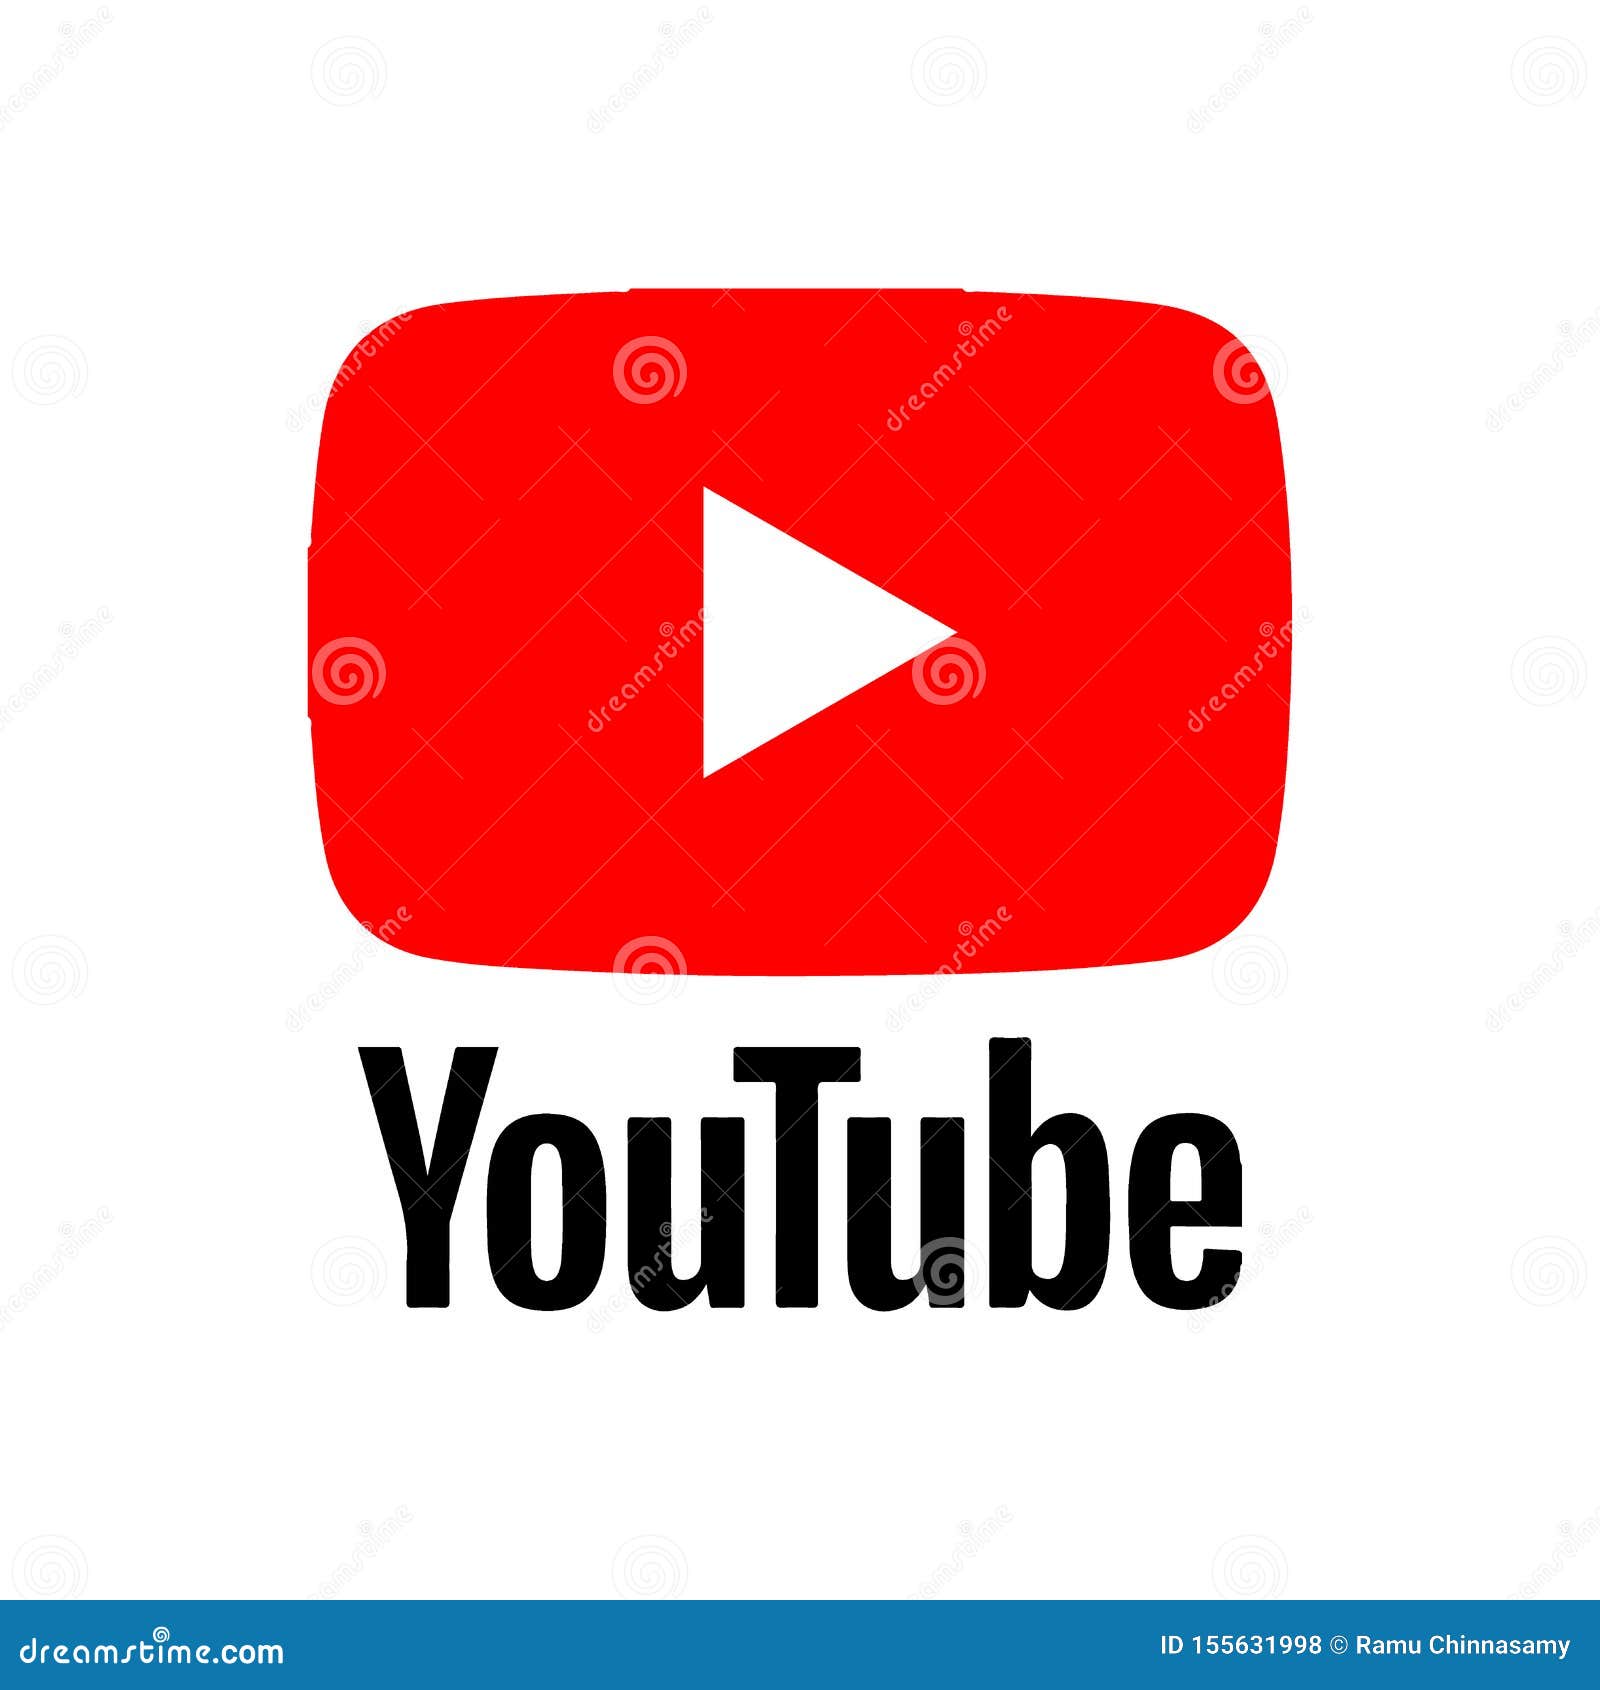 Nếu bạn đang tìm kiếm hình ảnh đẹp về YouTube, hãy thử bấm vào biểu tượng YouTube được hiển thị trong bài viết này. Bạn sẽ tìm thấy một cách khác để đưa ra ý tưởng, thông tin về mạng xã hội video phổ biến nhất thế giới này.